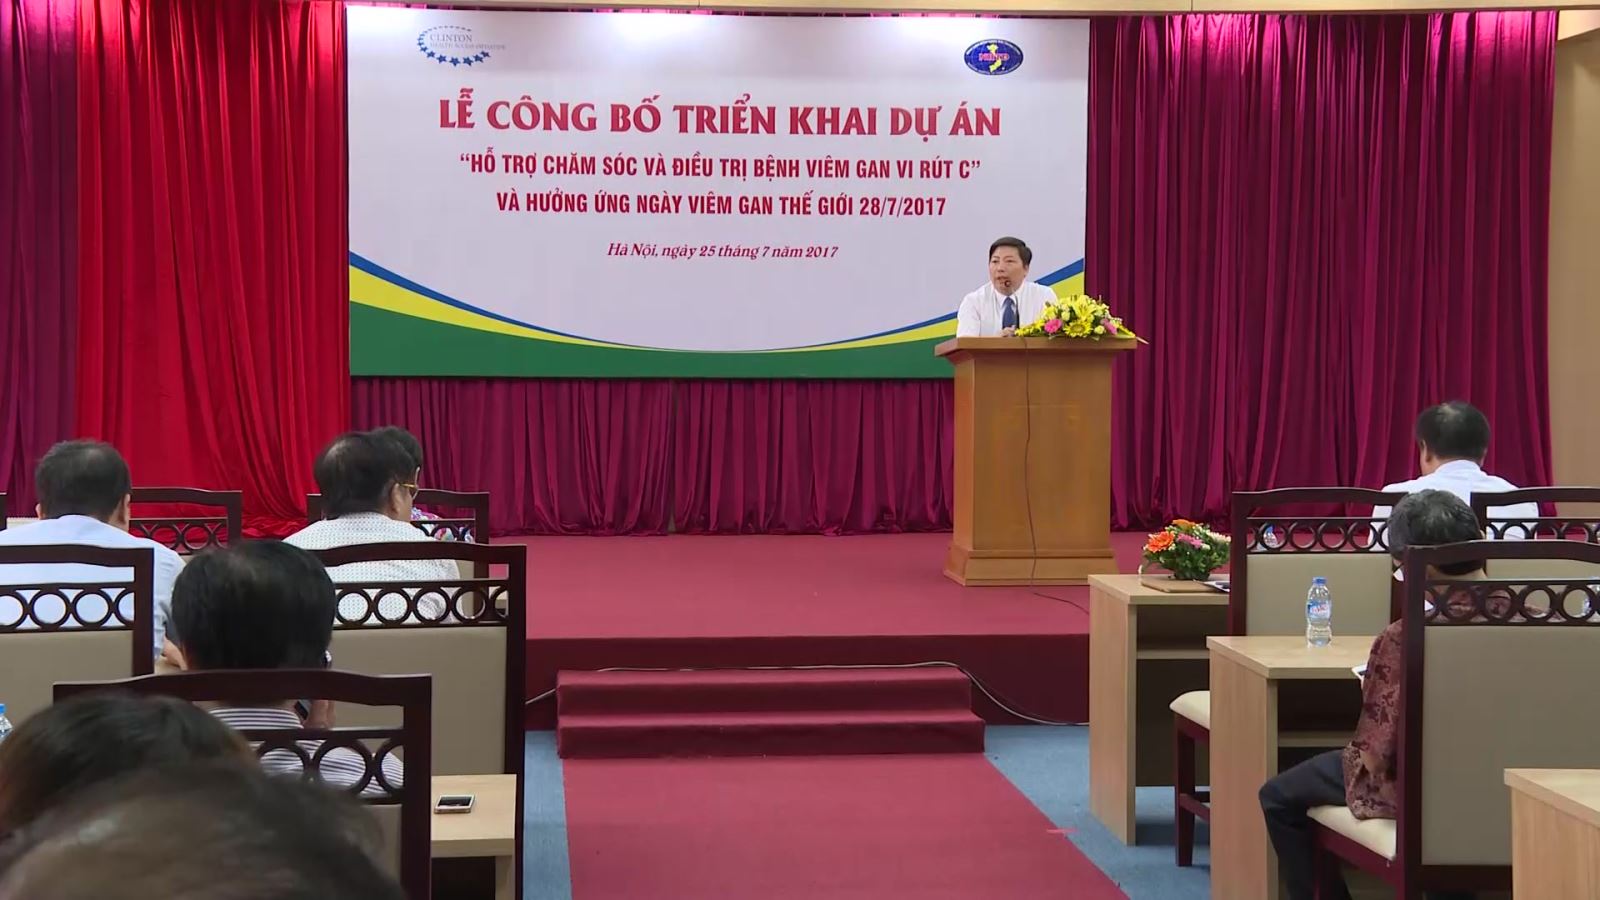 Triển khai Dự án Hỗ trợ chăm sóc và điều trị bệnh viêm gan C tại Việt Nam